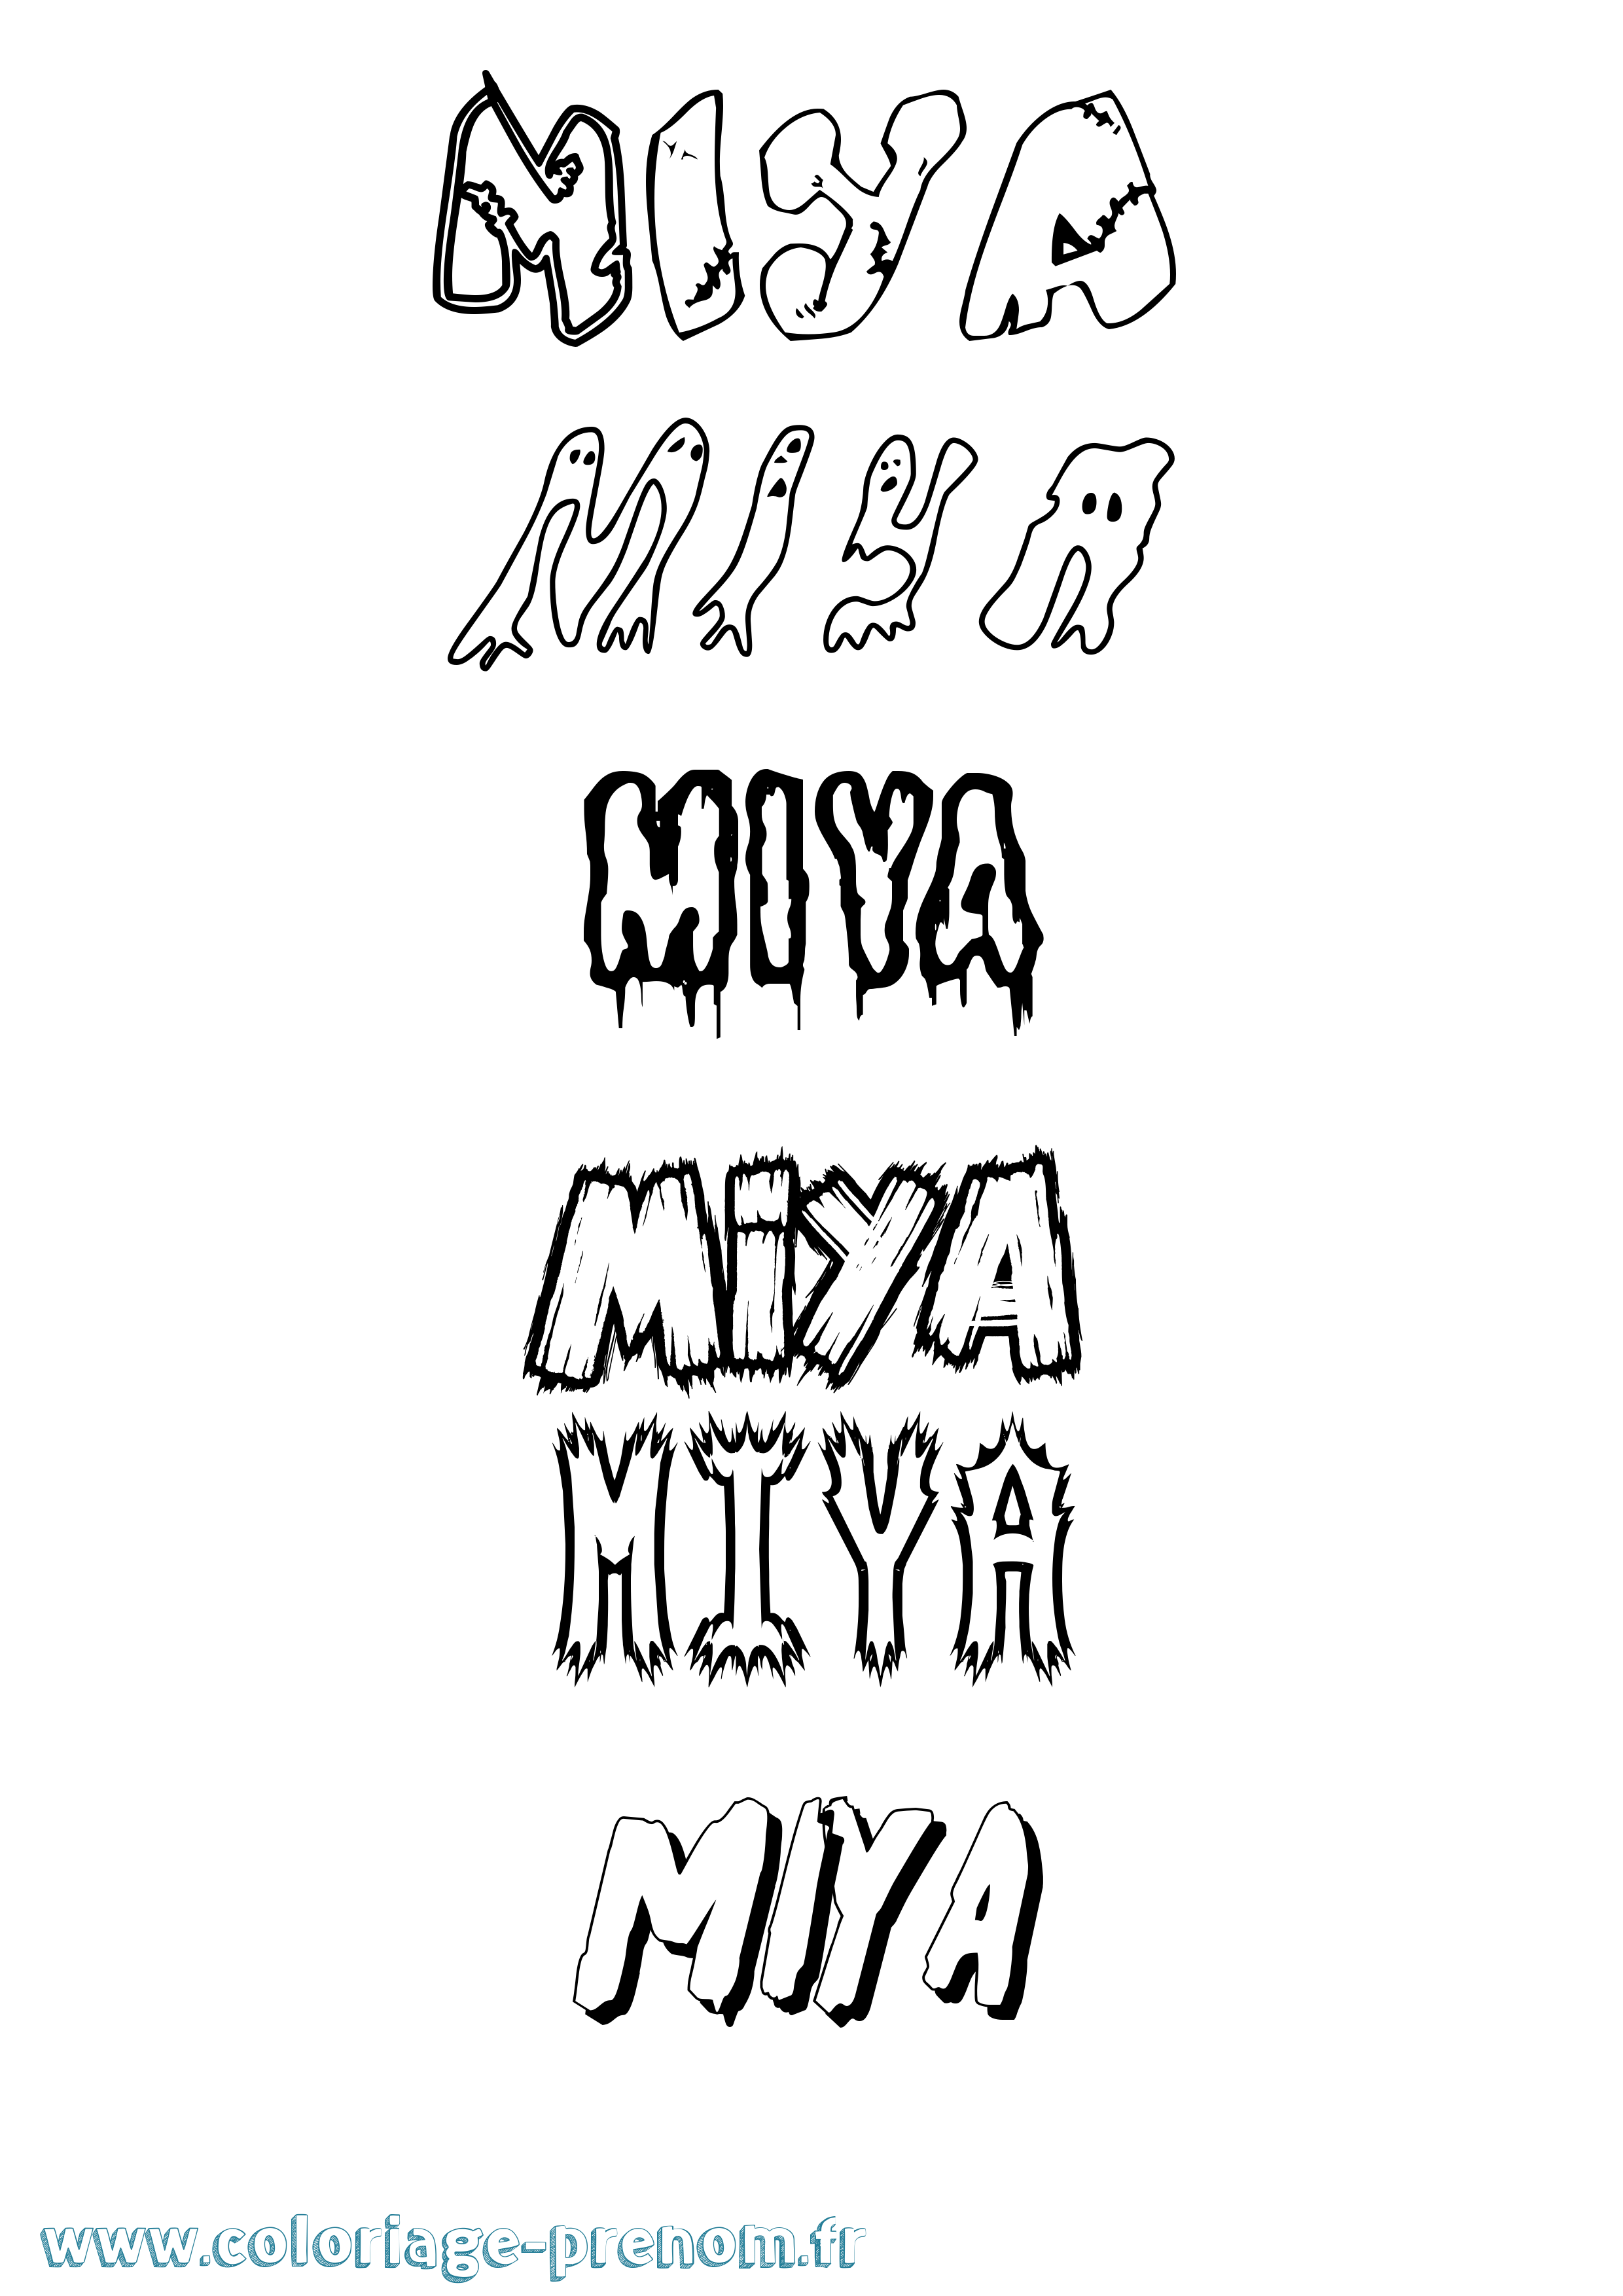 Coloriage prénom Miya